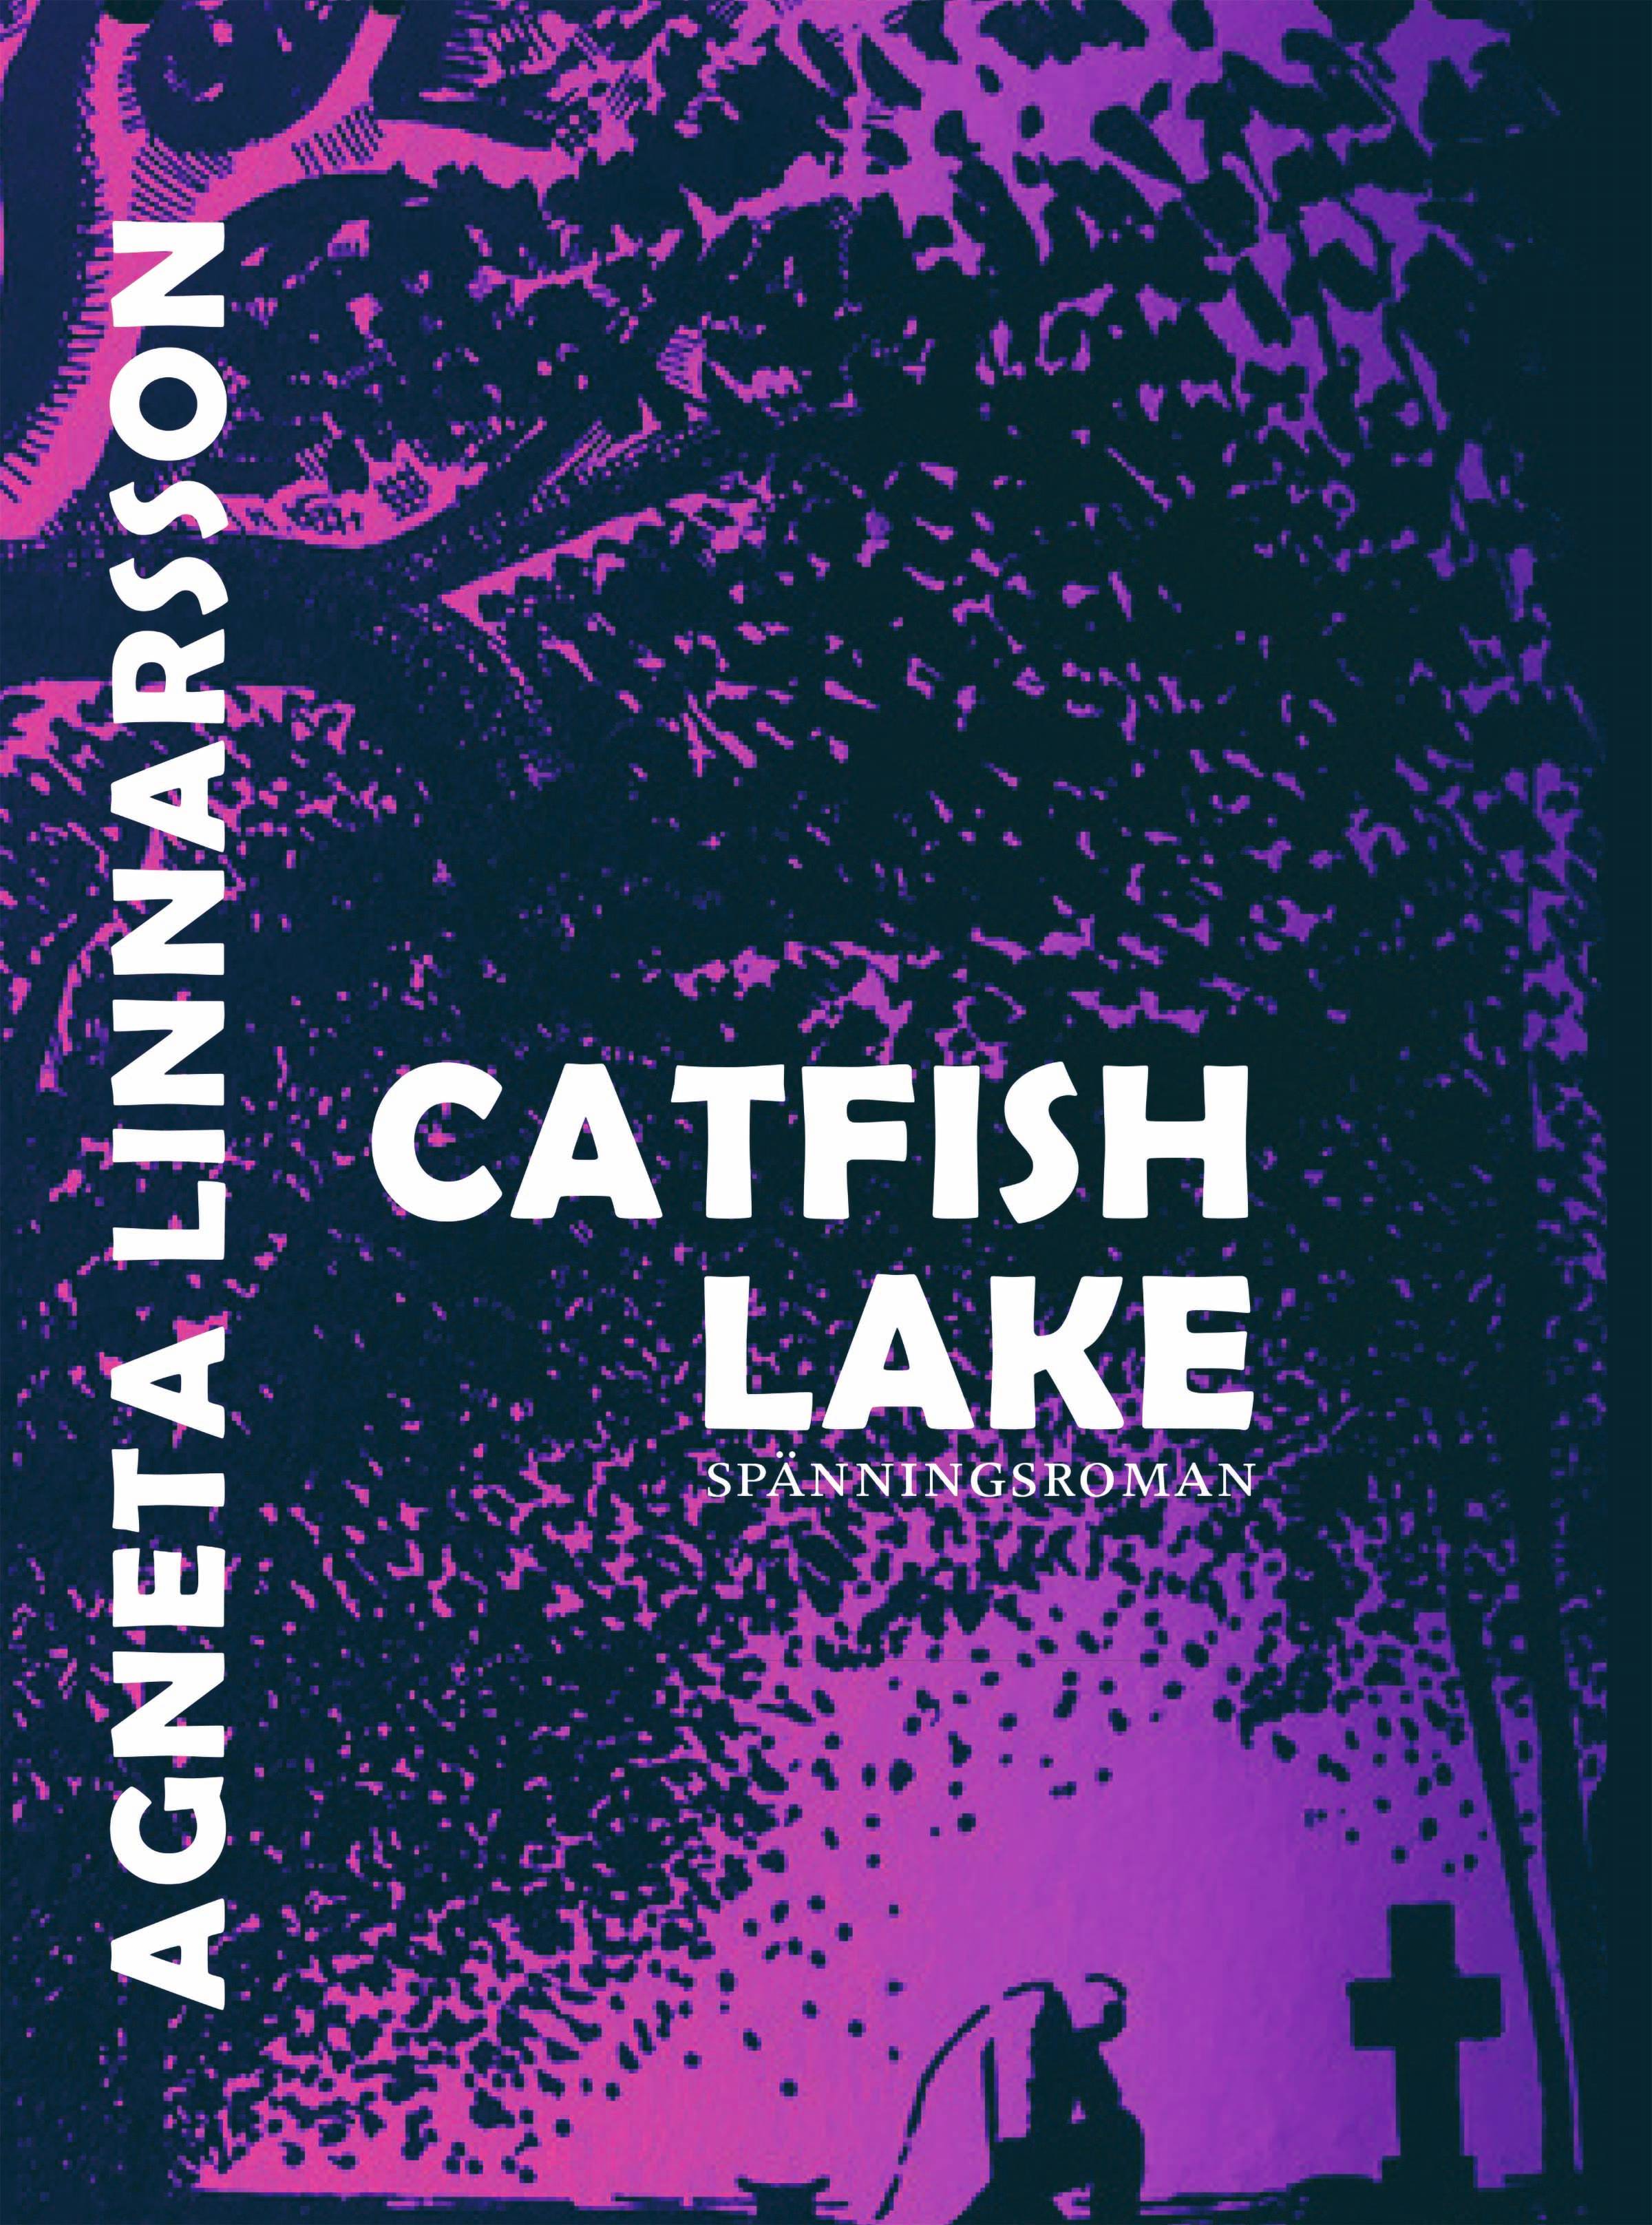 Catfish lake